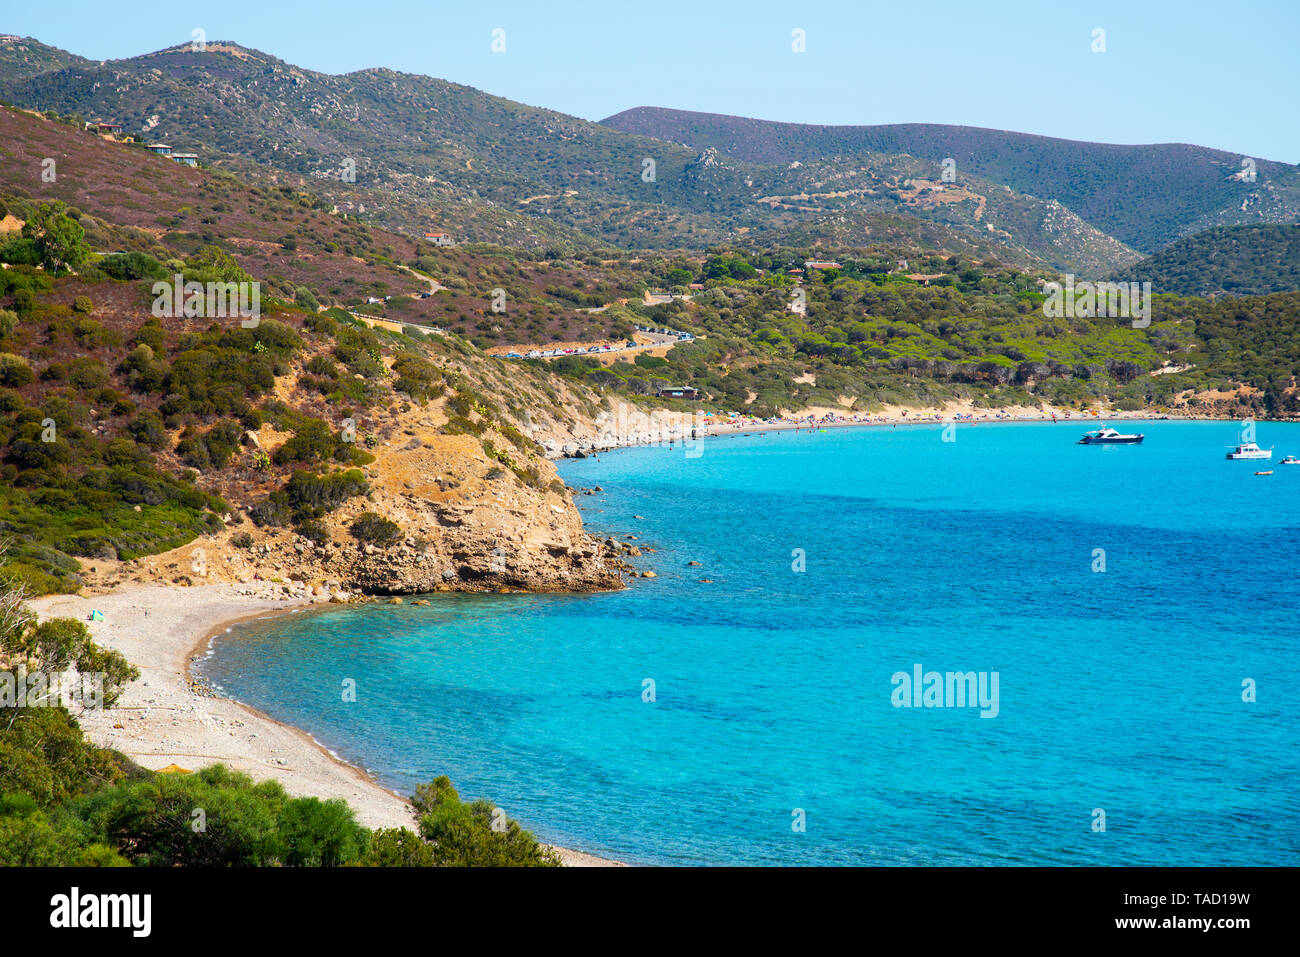 La vista panoramica su Canaleddus è la spiaggia e il mare mediterraneo in Sardegna, Italia, con la spiaggia di Mari Pintau spiaggia in background Foto Stock